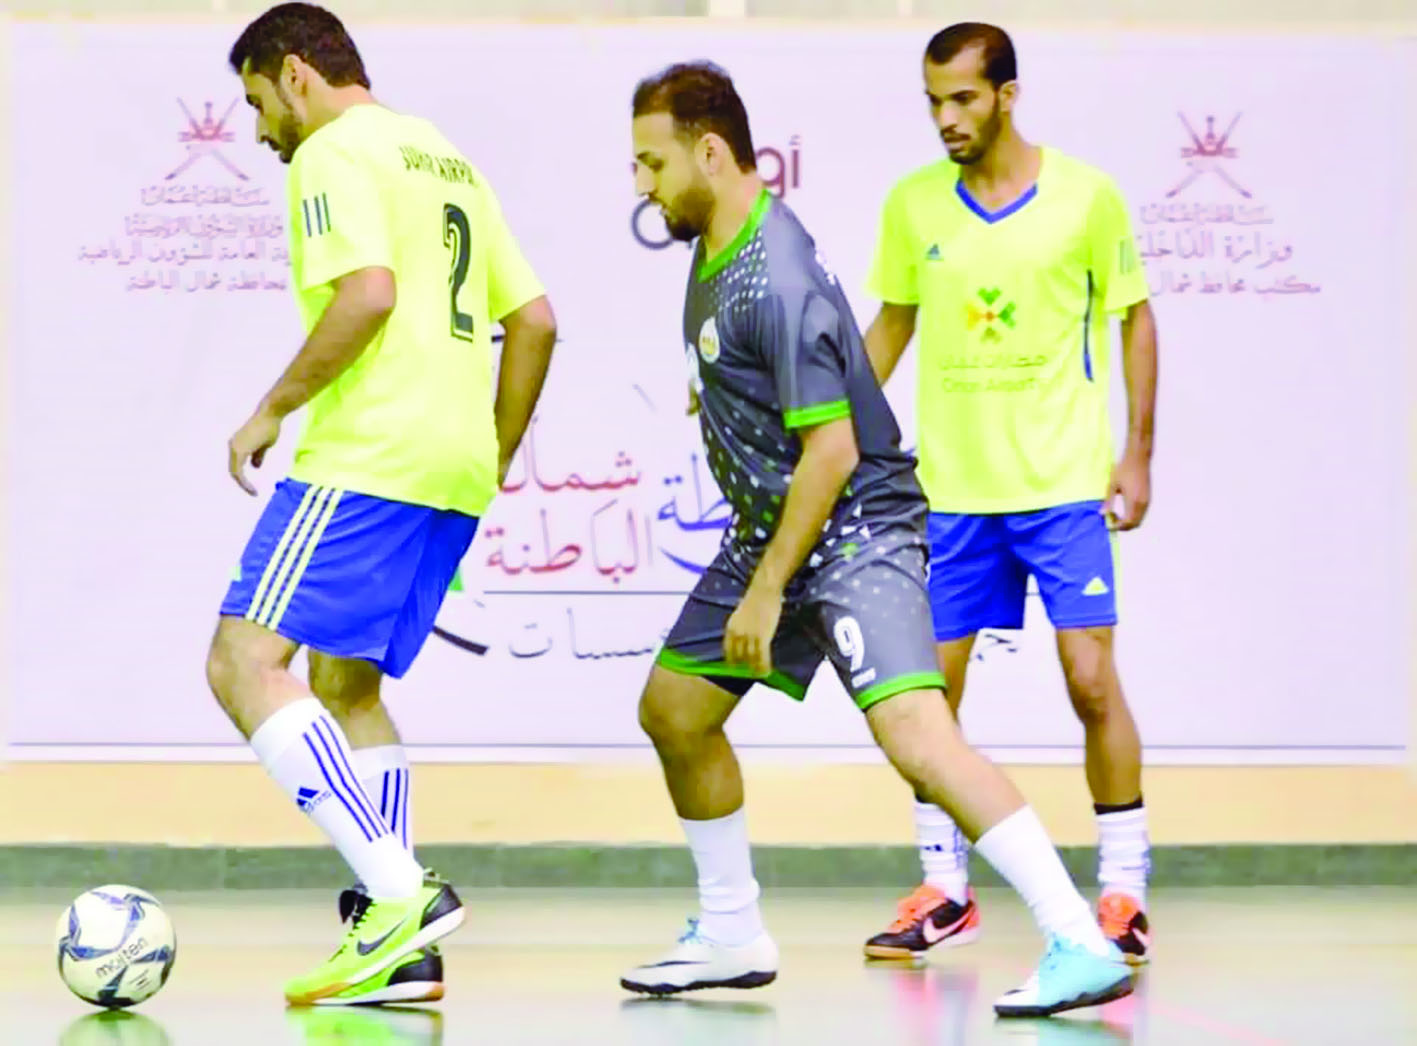 منافسات قوية تشهدها بطولة كأس محافظة شمال الباطنة لخماسيات كرة القدم